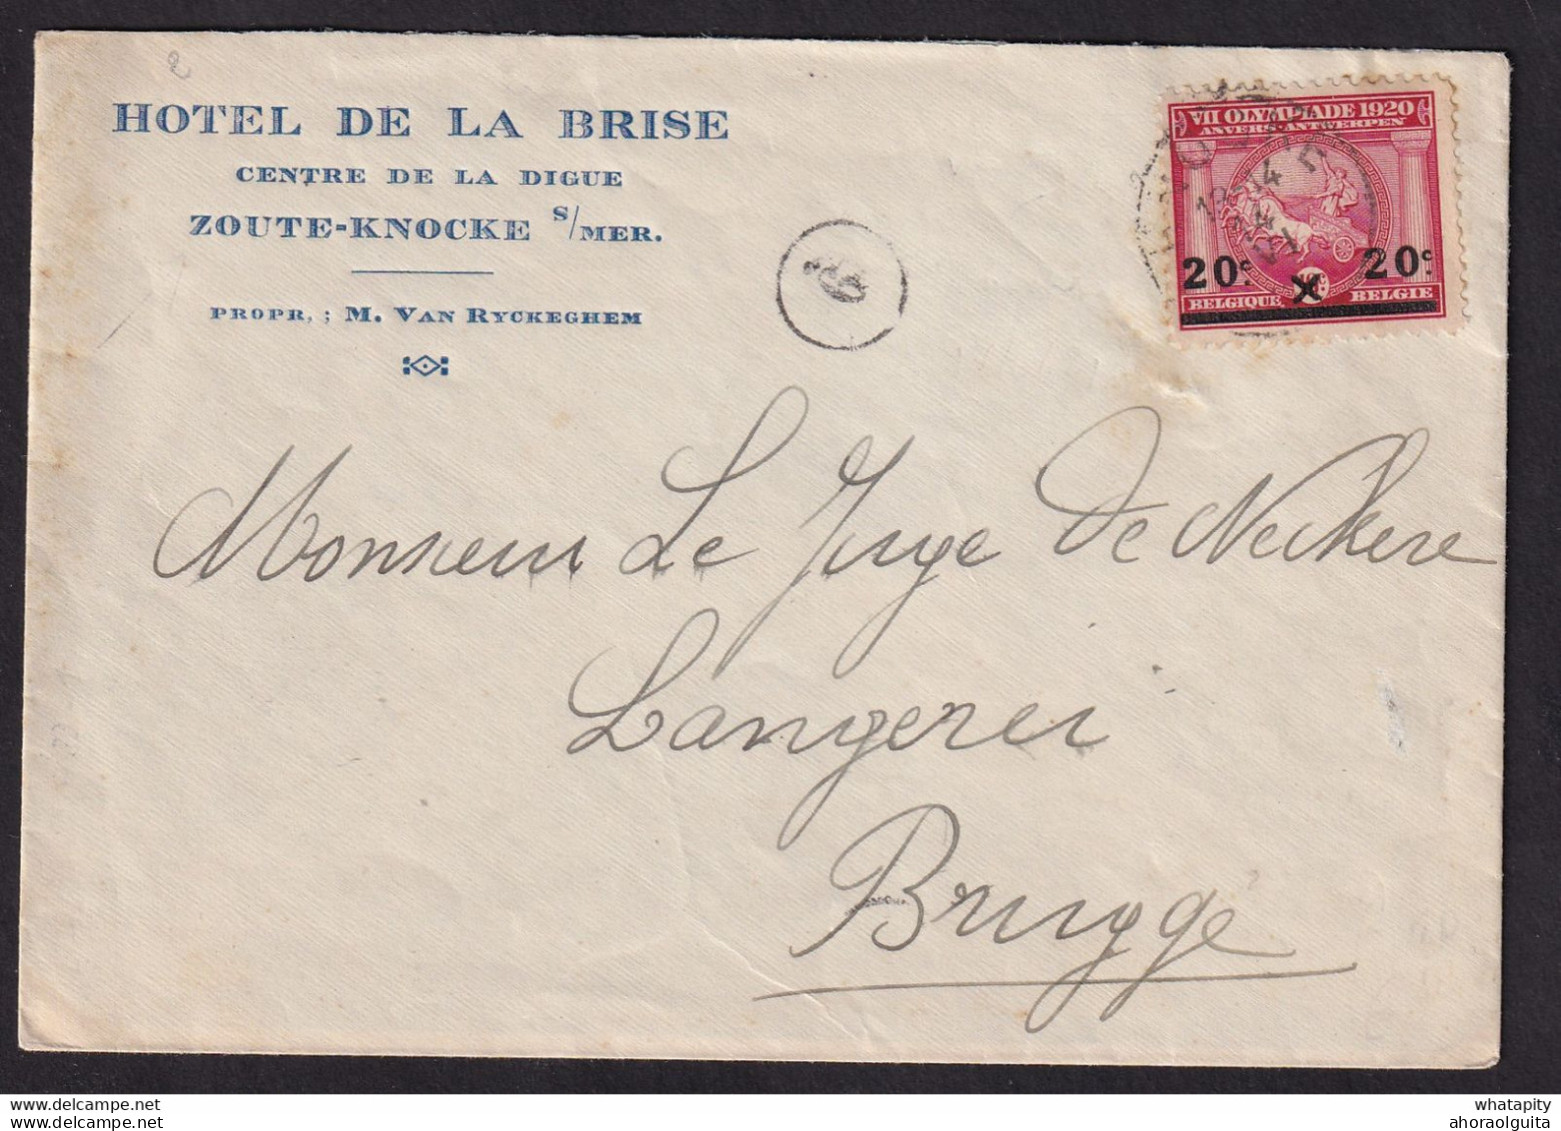 DDBB 577 - Enveloppe Illustrée TP Jeux Olympiques KNOKKE 1921 Vers BRUGGE - Entete Et Gravure Hotel De La Brise, Digue - Ete 1920: Anvers